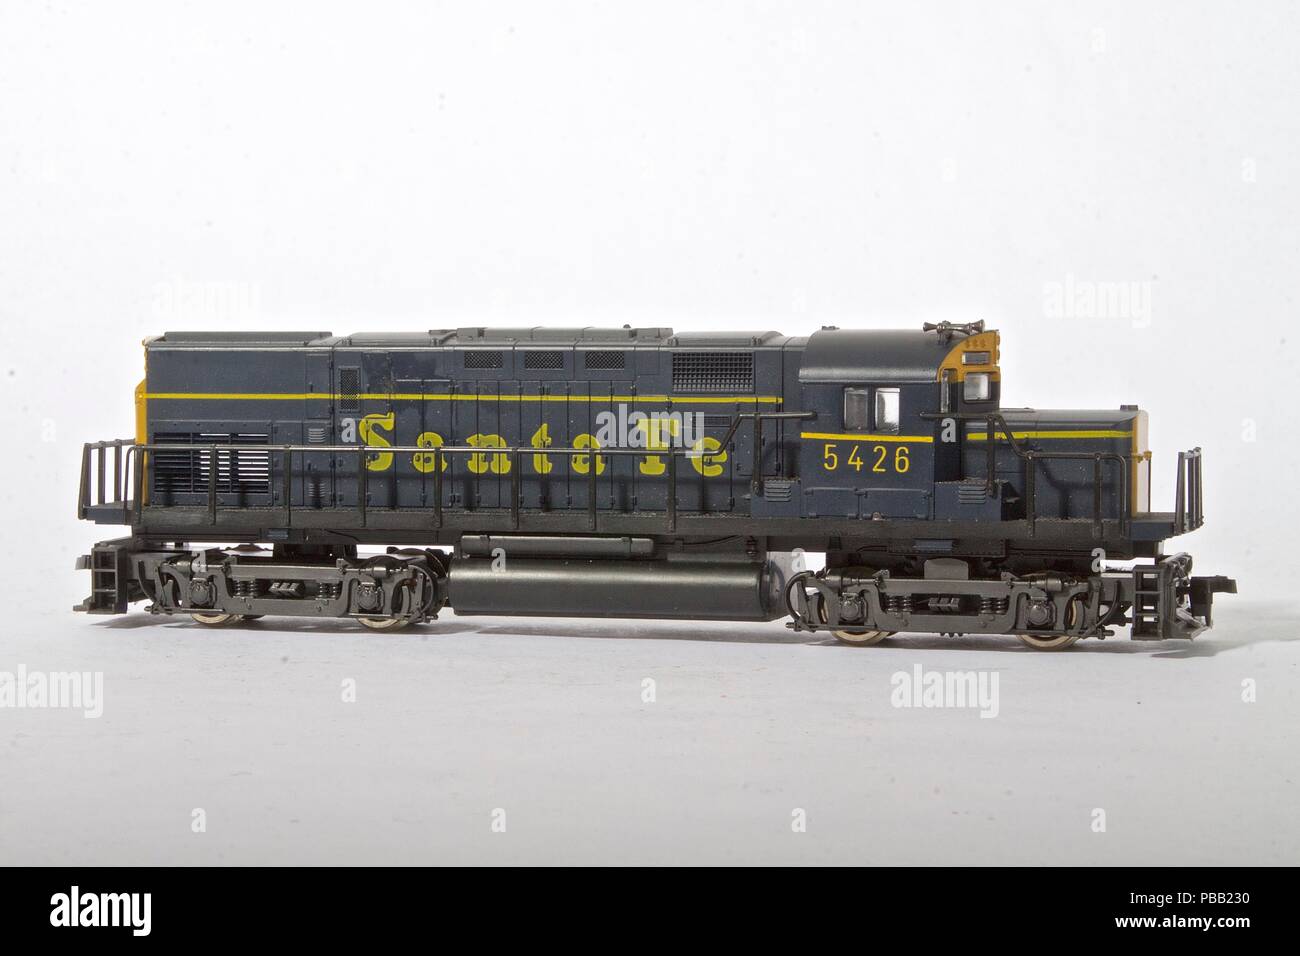 HO Scale Model Santa Fe diesel locomotive Stock Photo